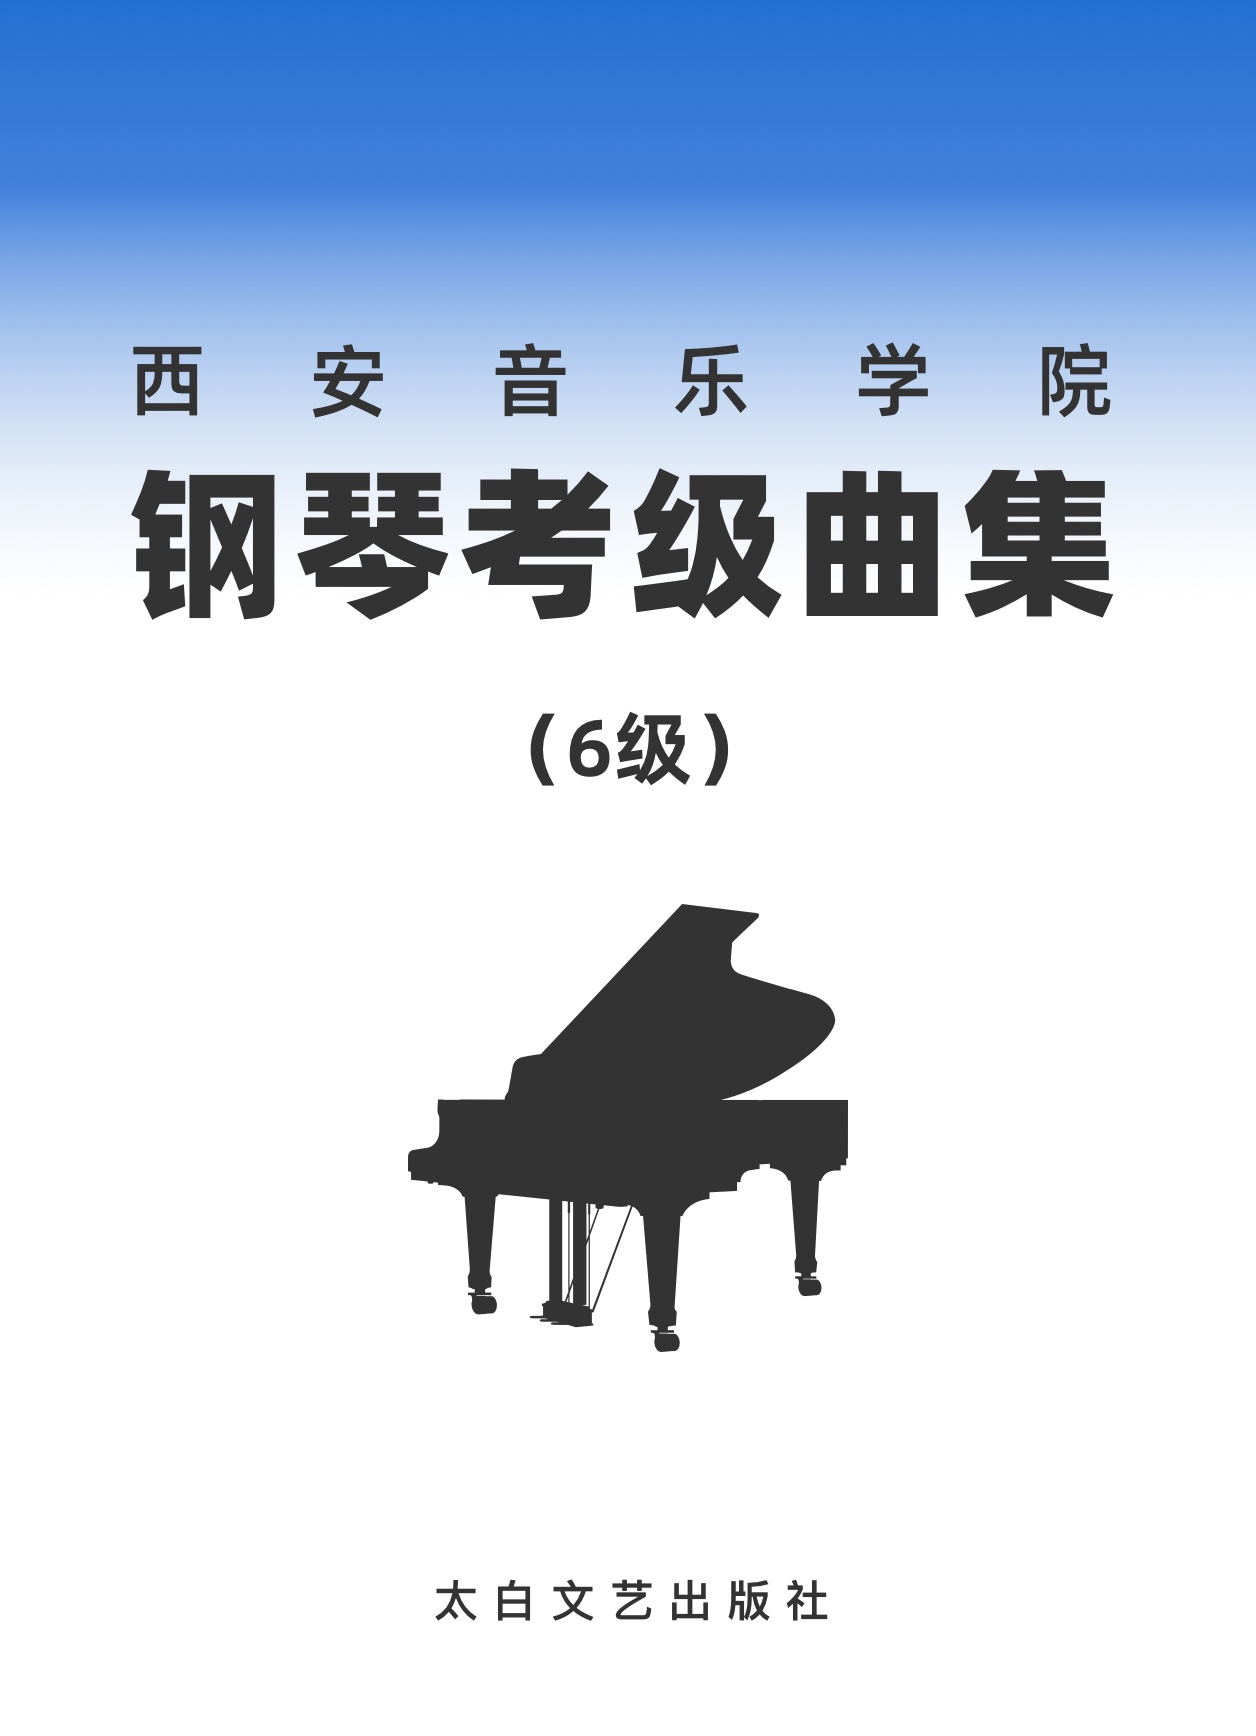 16第六级 前奏曲钢琴简谱 数字双手